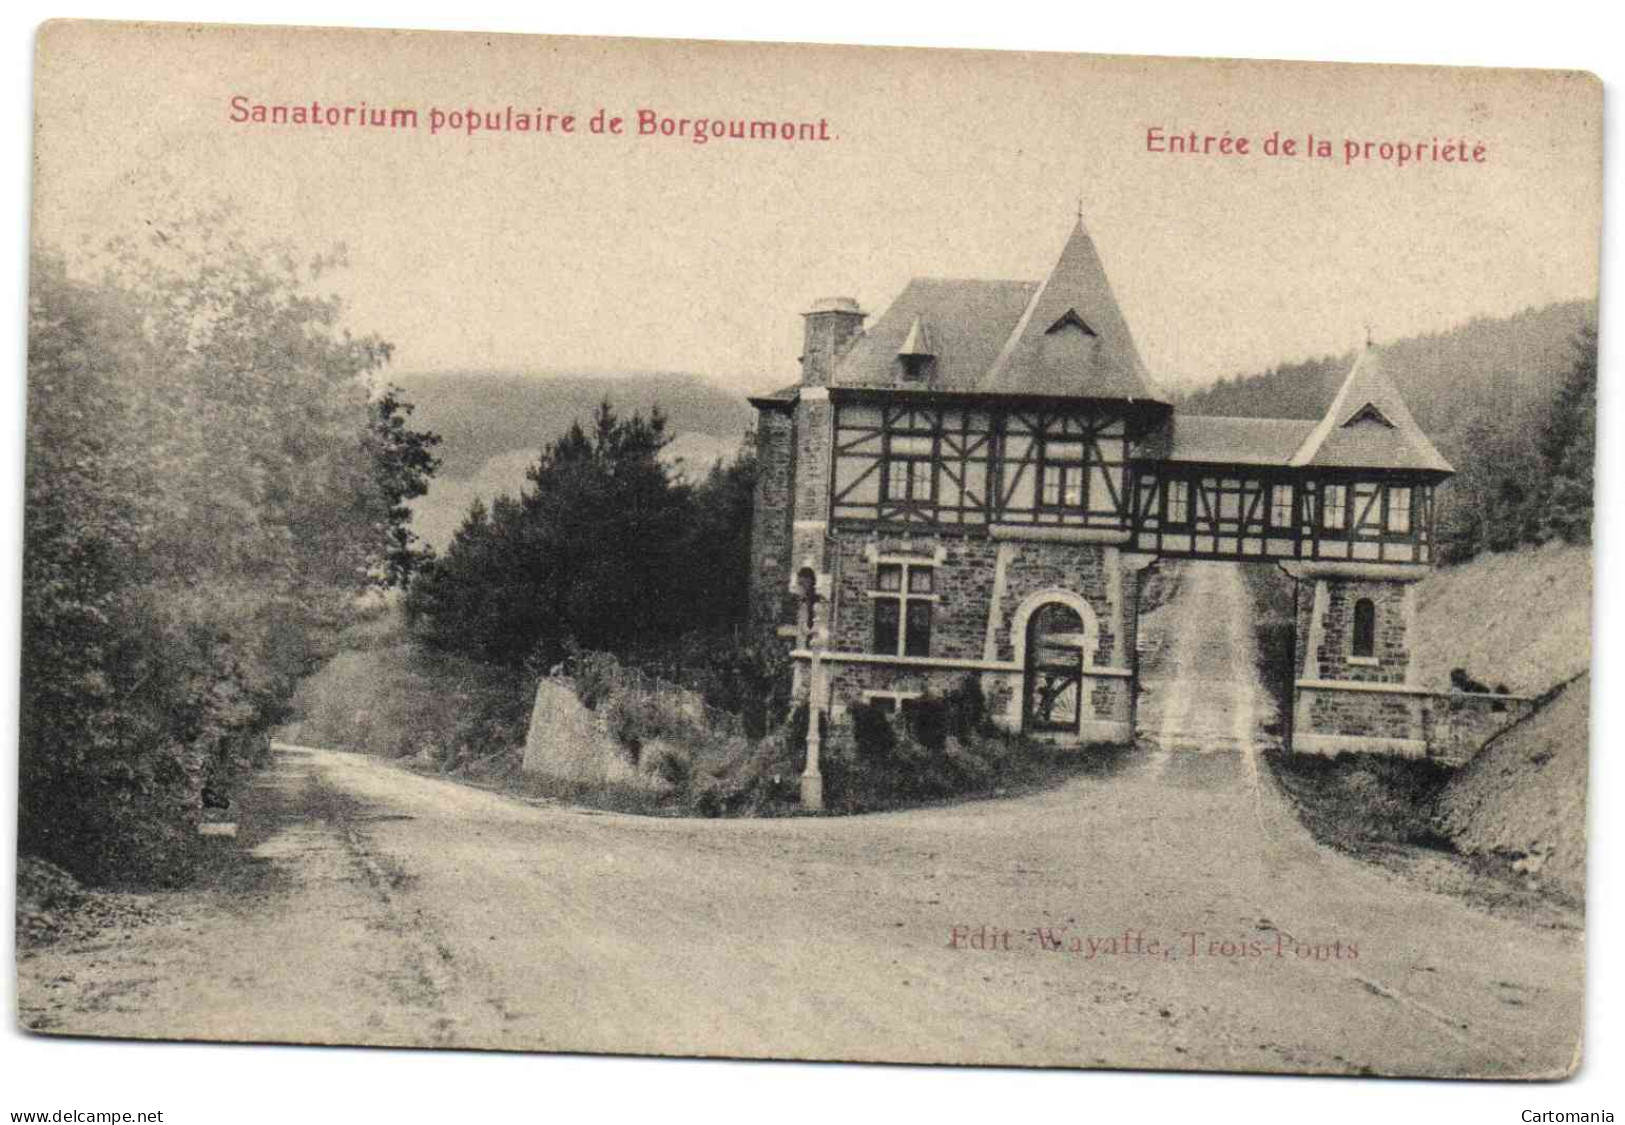 Sanotorium Populaire De Borgoumont - Entrée De La Propriété (Edit. Wayaffe, Trois-Ponts) - Stoumont